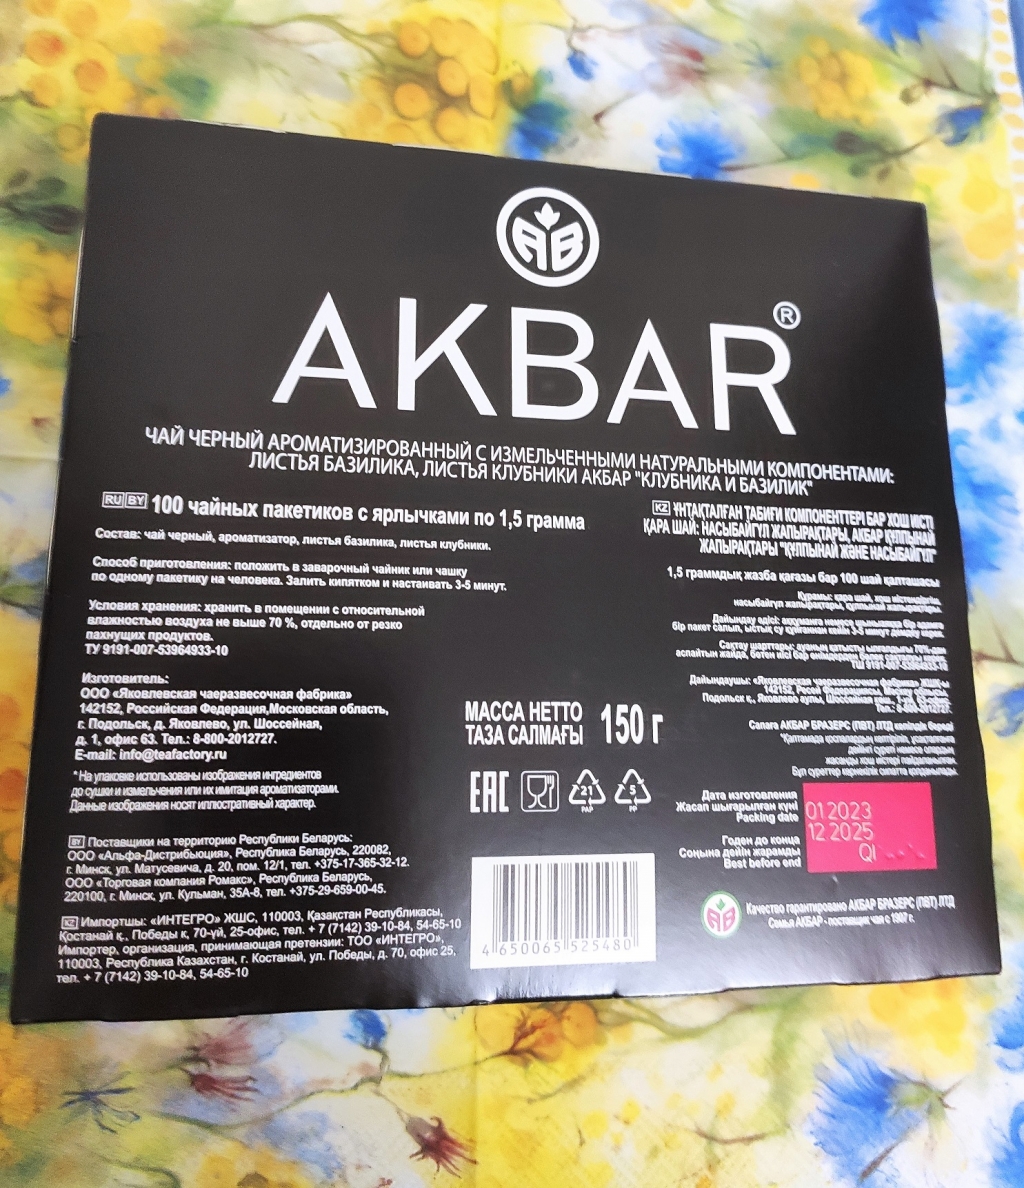 Черный чай Akbar Клубника и Базилик, 100 пак - Вкусная новинка от Акбар